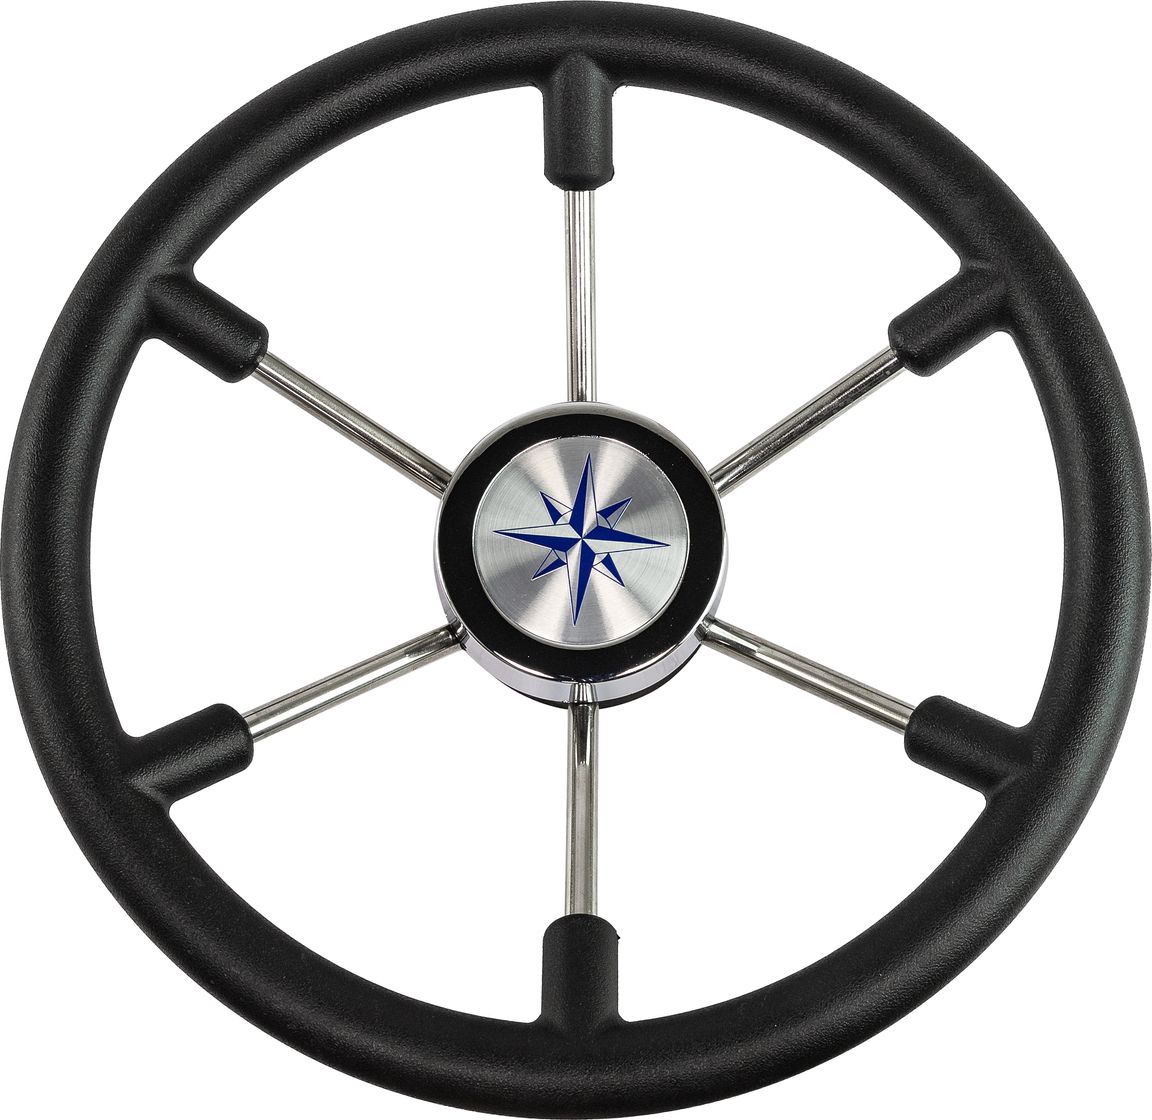 Рулевое колесо LEADER PLAST черный обод серебряные спицы д. 360 мм VN8360-01 рулевое колесо 7400 7400ss